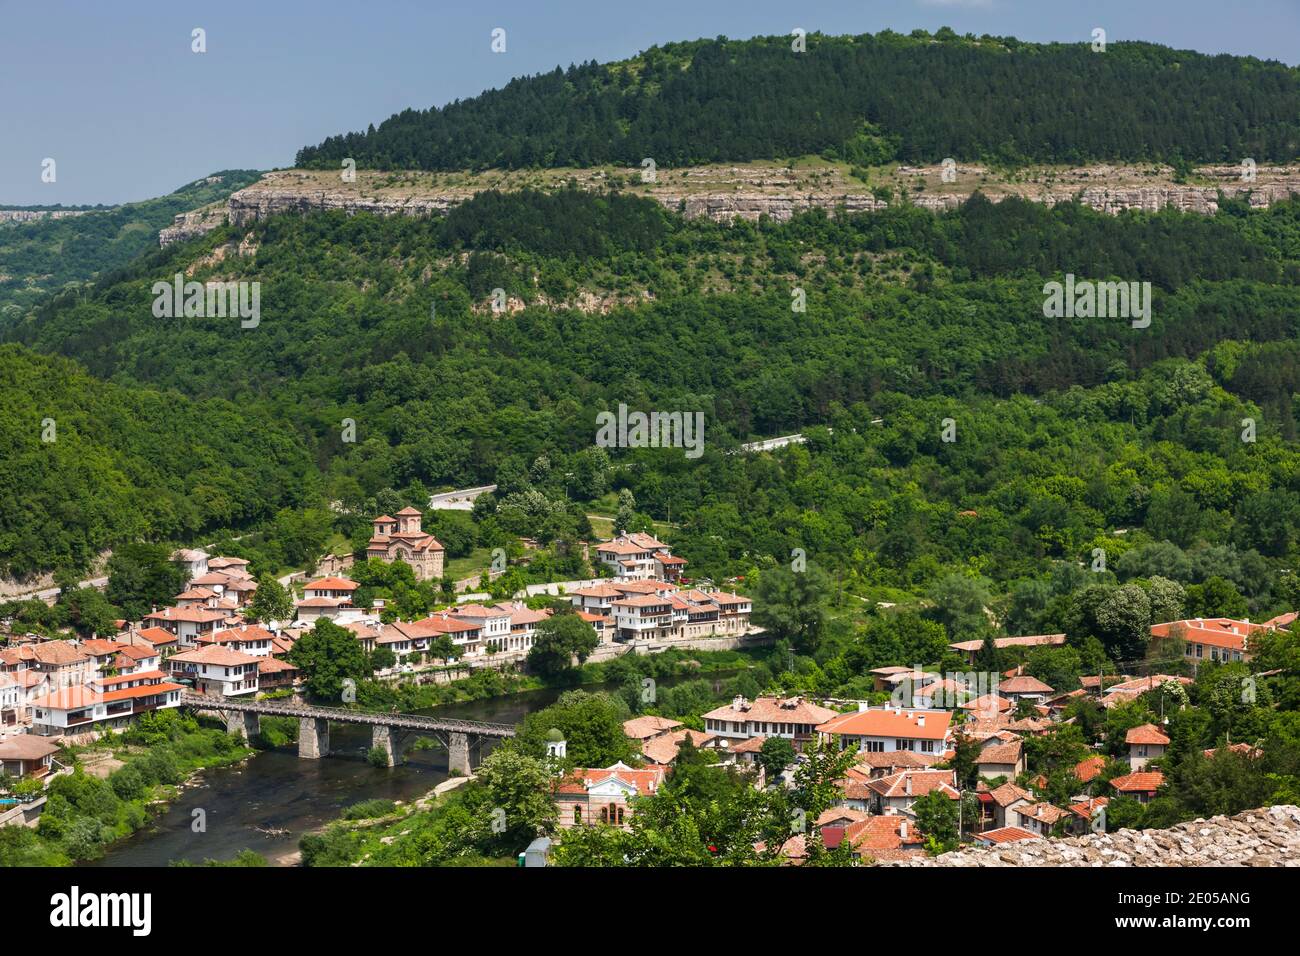 Vue panoramique du centre ville à flanc de colline, rivière Yantra, capitale historique, Veliko Tarnovo, province de Veliko Tarnovo, Bulgarie, Europe du Sud-est, Europe Banque D'Images